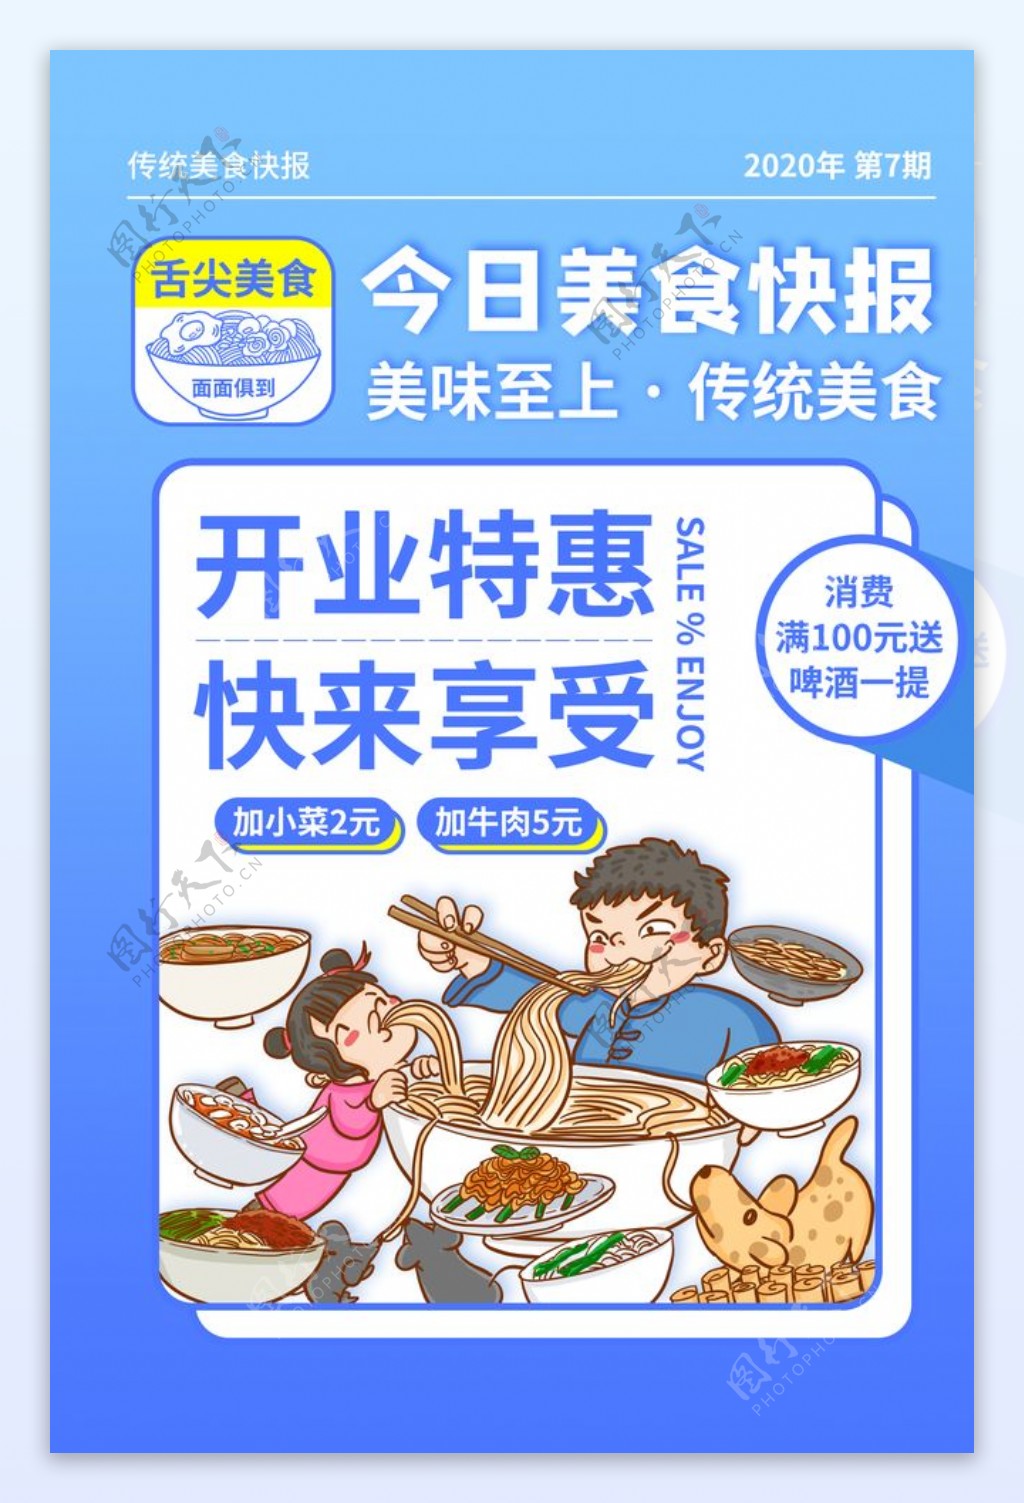 美食快报插画促销活动宣传海报